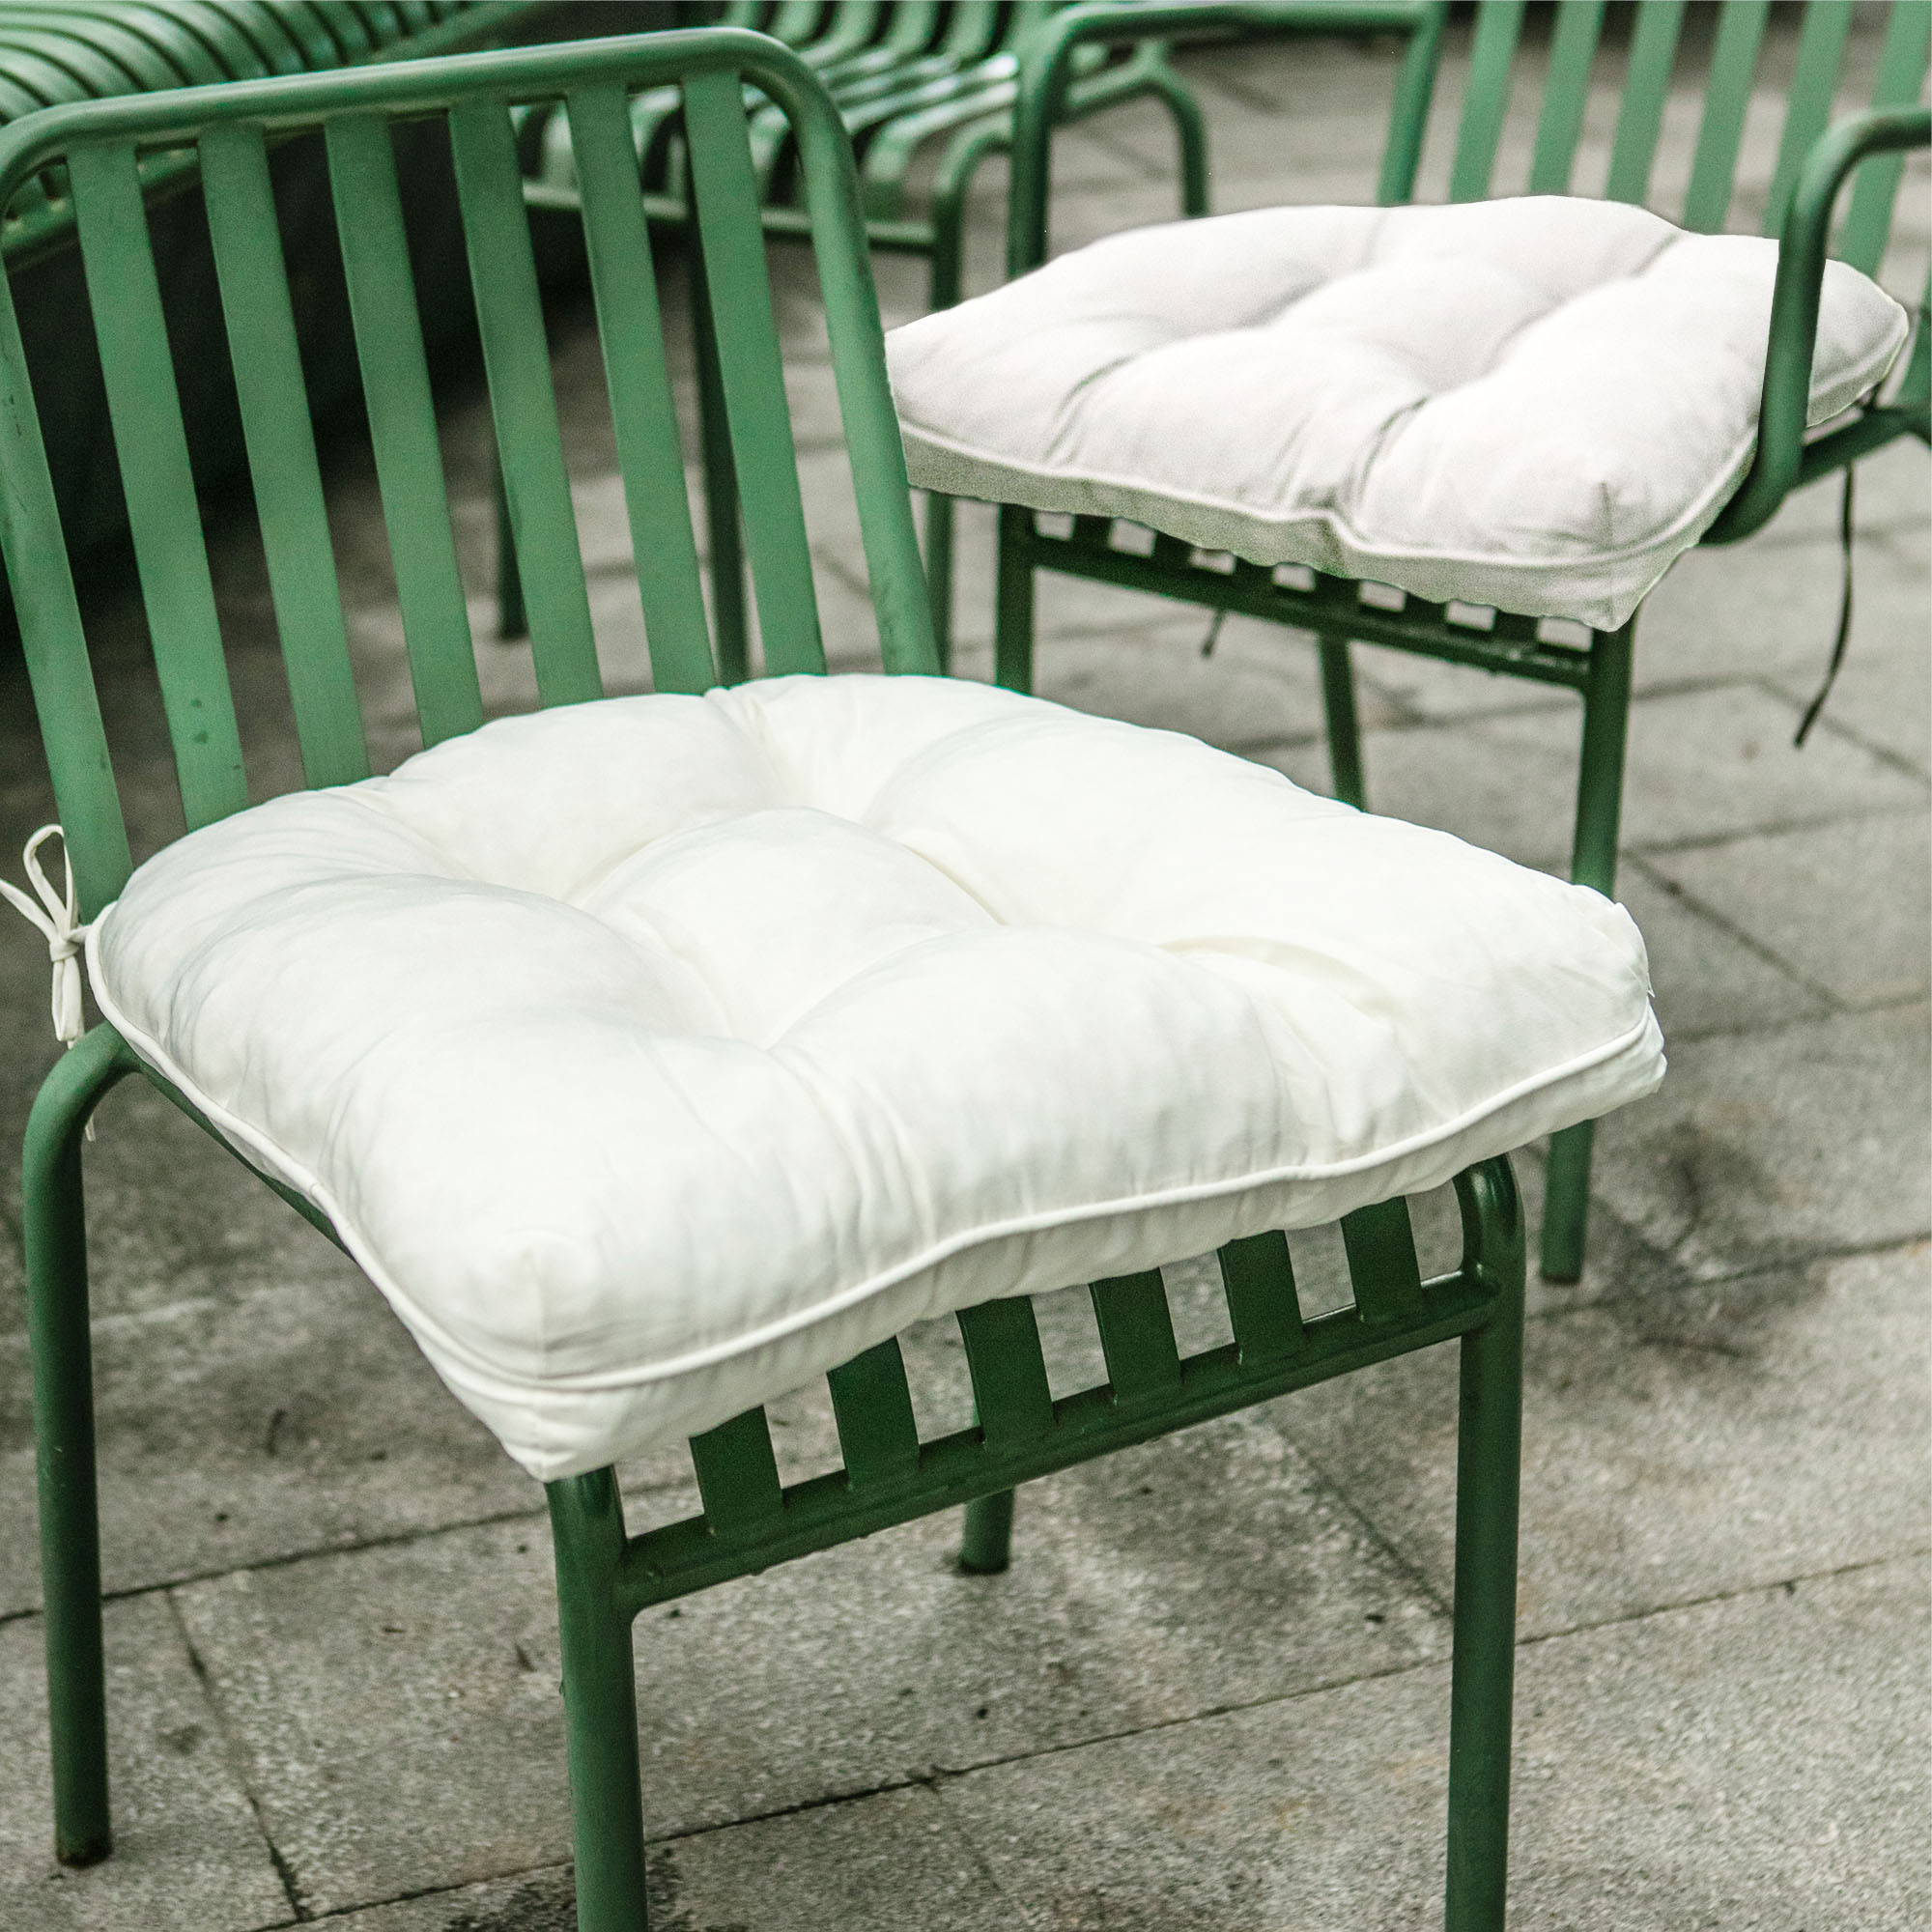 Outdoor Patio Seat Cushion Set Of 2-Waterproof Indoor Outdoor Cushion - Beige